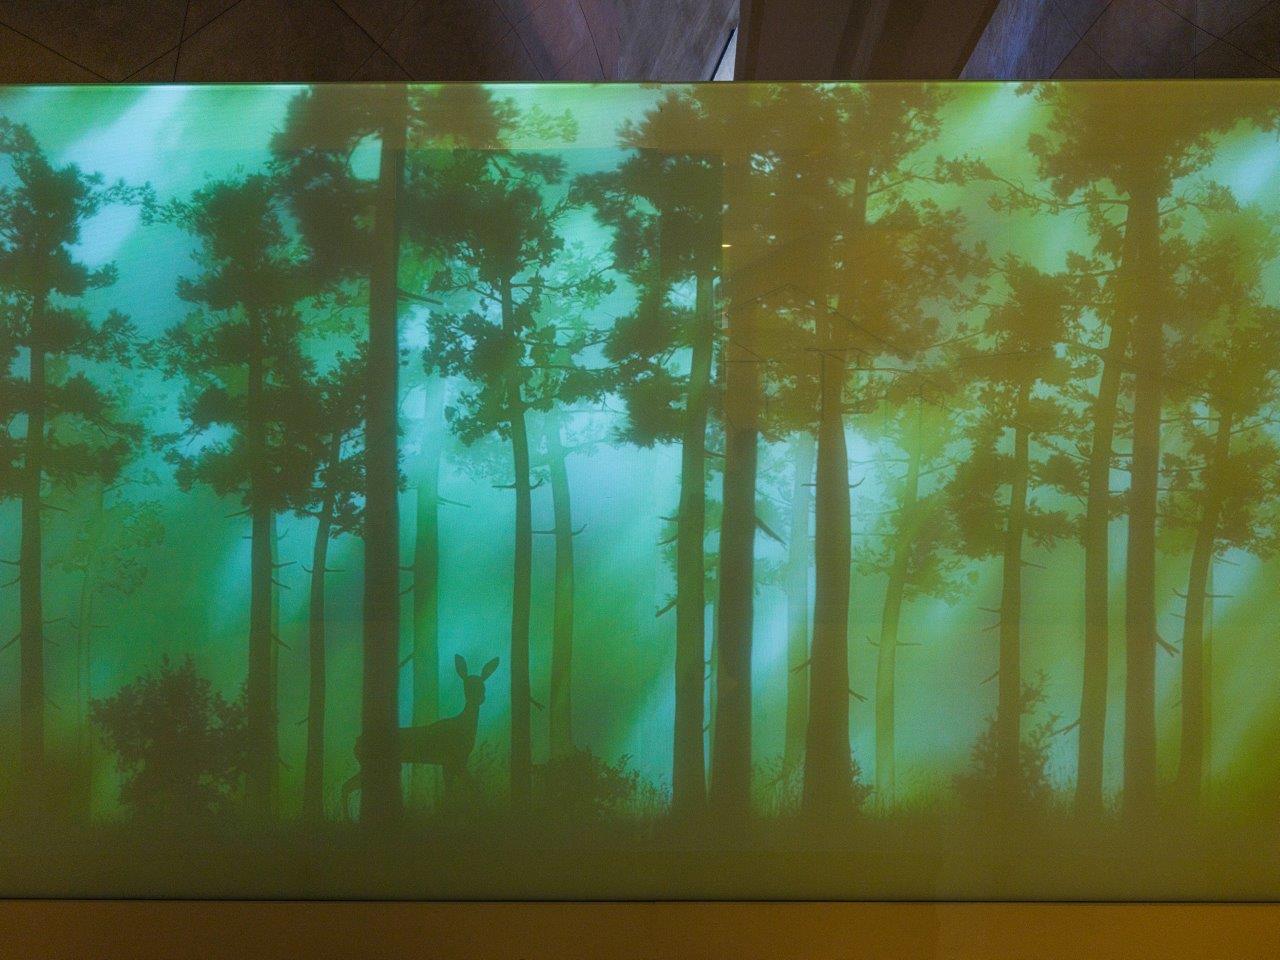 Fragment instalacji w galerii "Las" na wystawie stałej w Muzeum POLIN. Wizualizacja lasu na ekranie - wśród drzew widoczna sarenka.